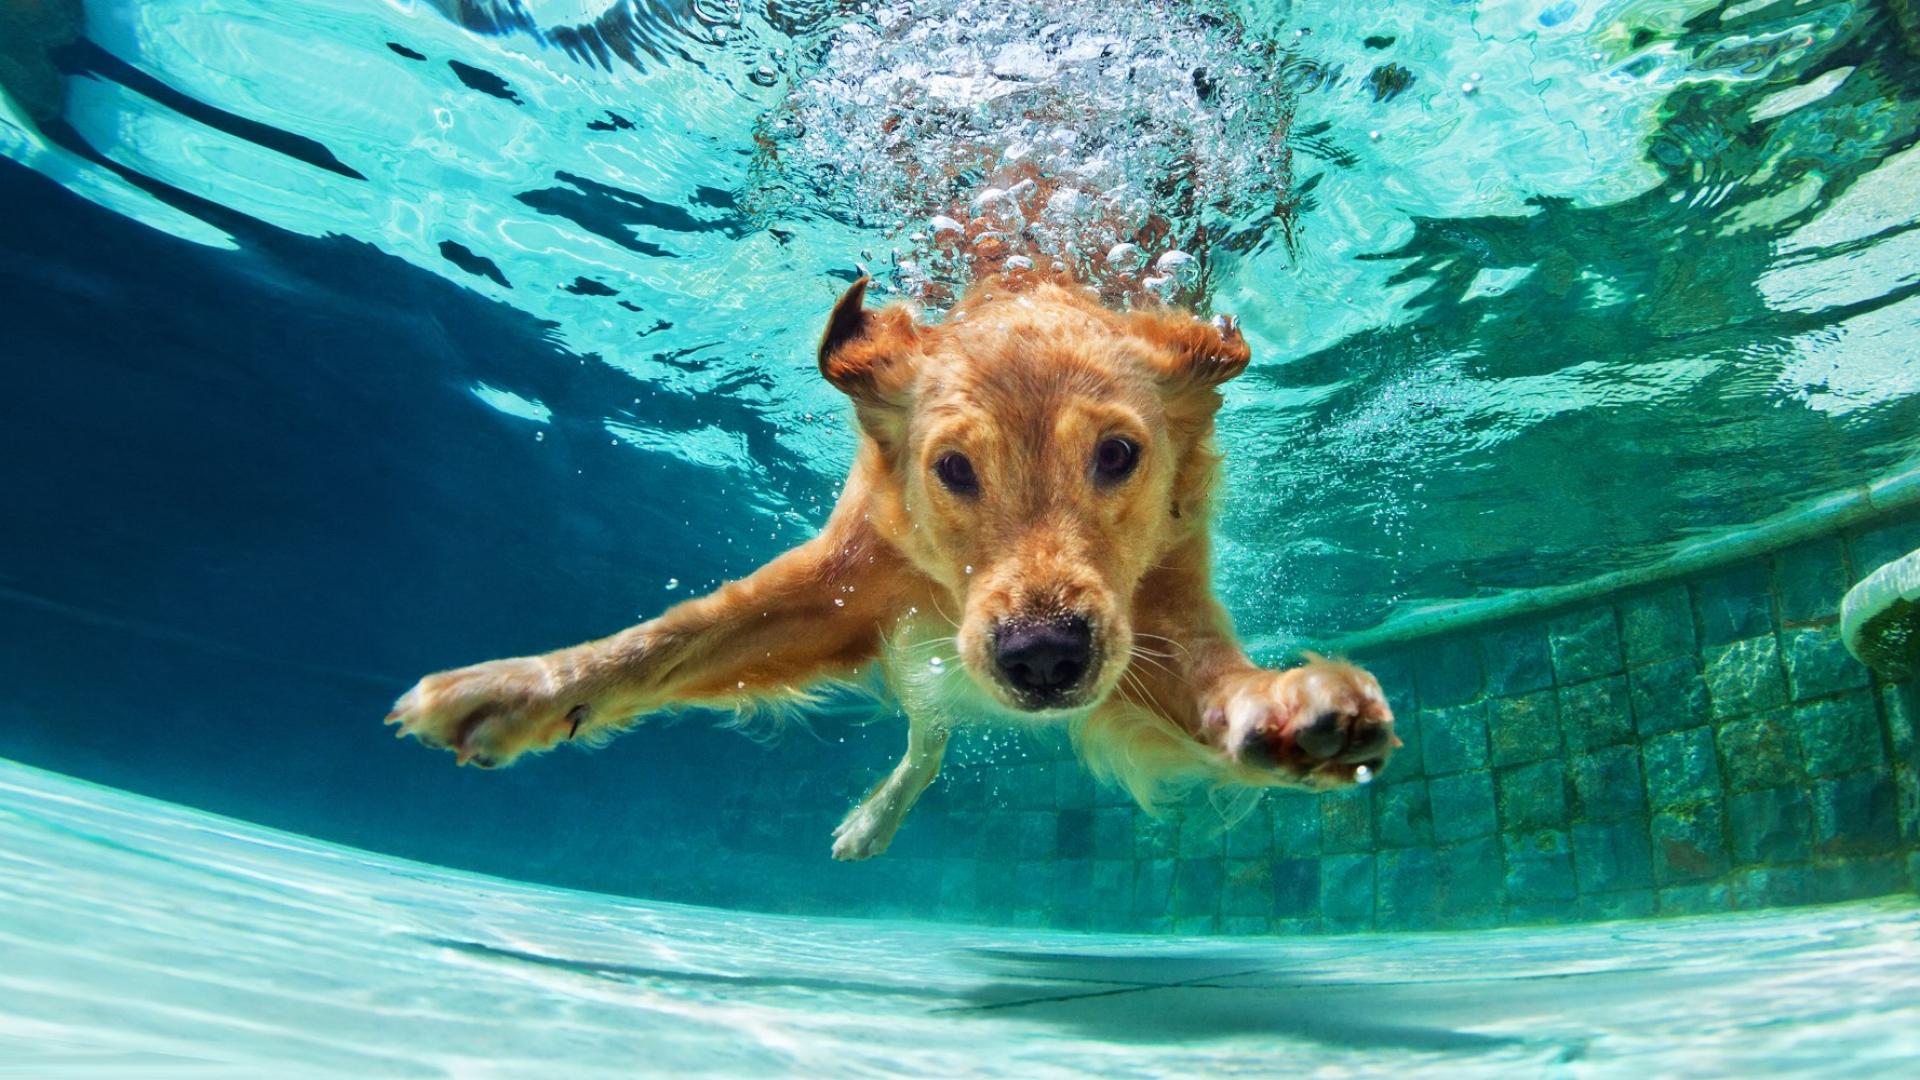 Auf dem Bild ist ein Golden Retreiver zu sehen, der in einem Schwimmbecken unter Wasser taucht.